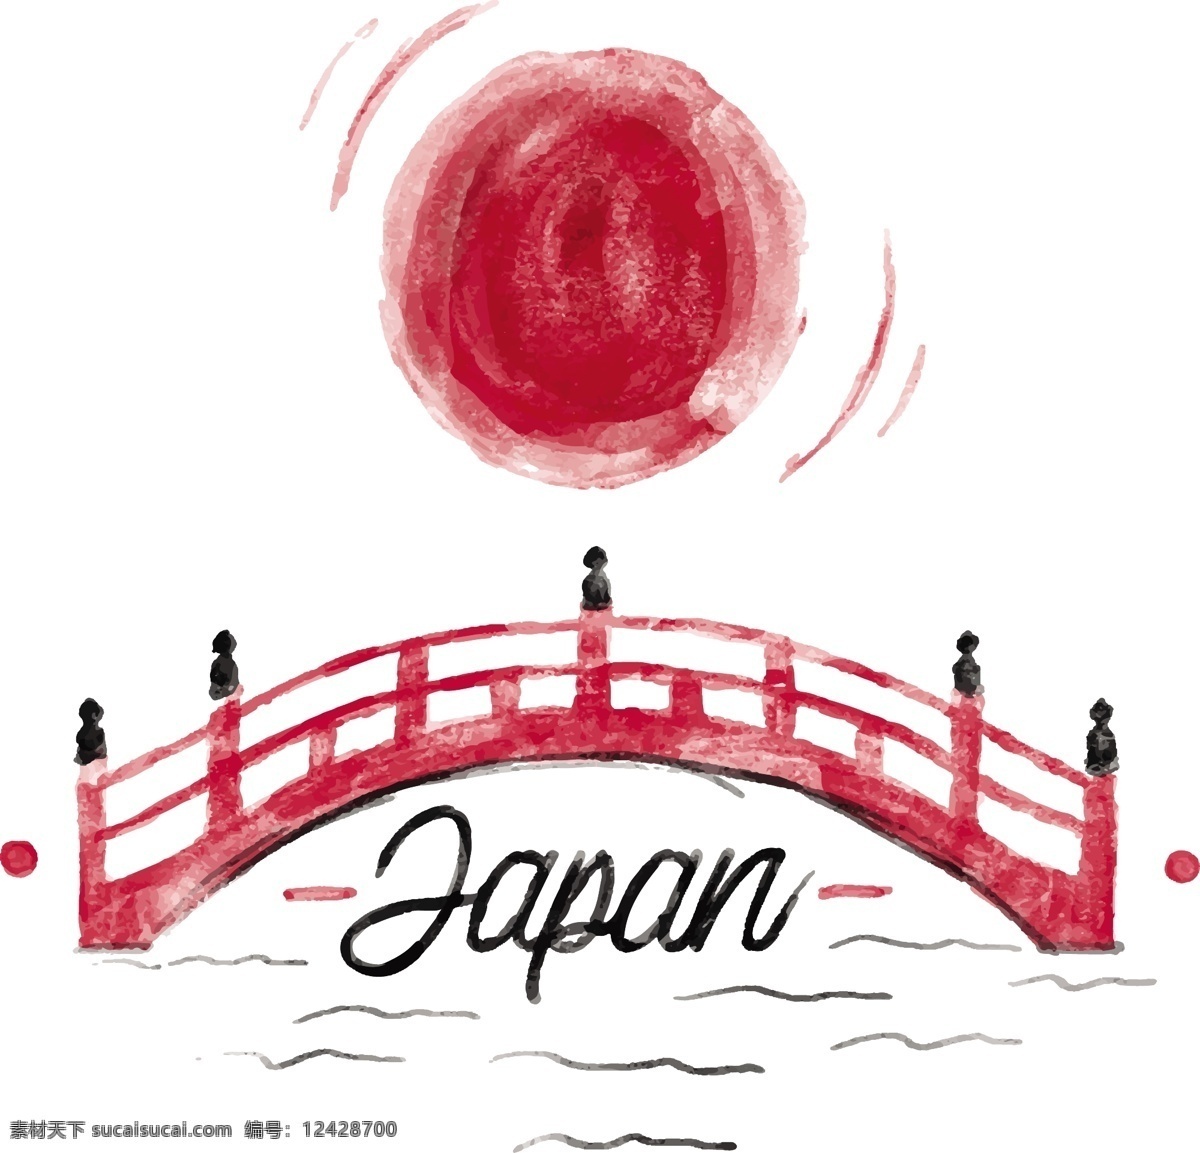 日本 风格 水彩 插画 日本元素 矢量素材 背景素材 背景 日本背景 日本风格 水彩插画 日本插画 桥 日本桥 红日